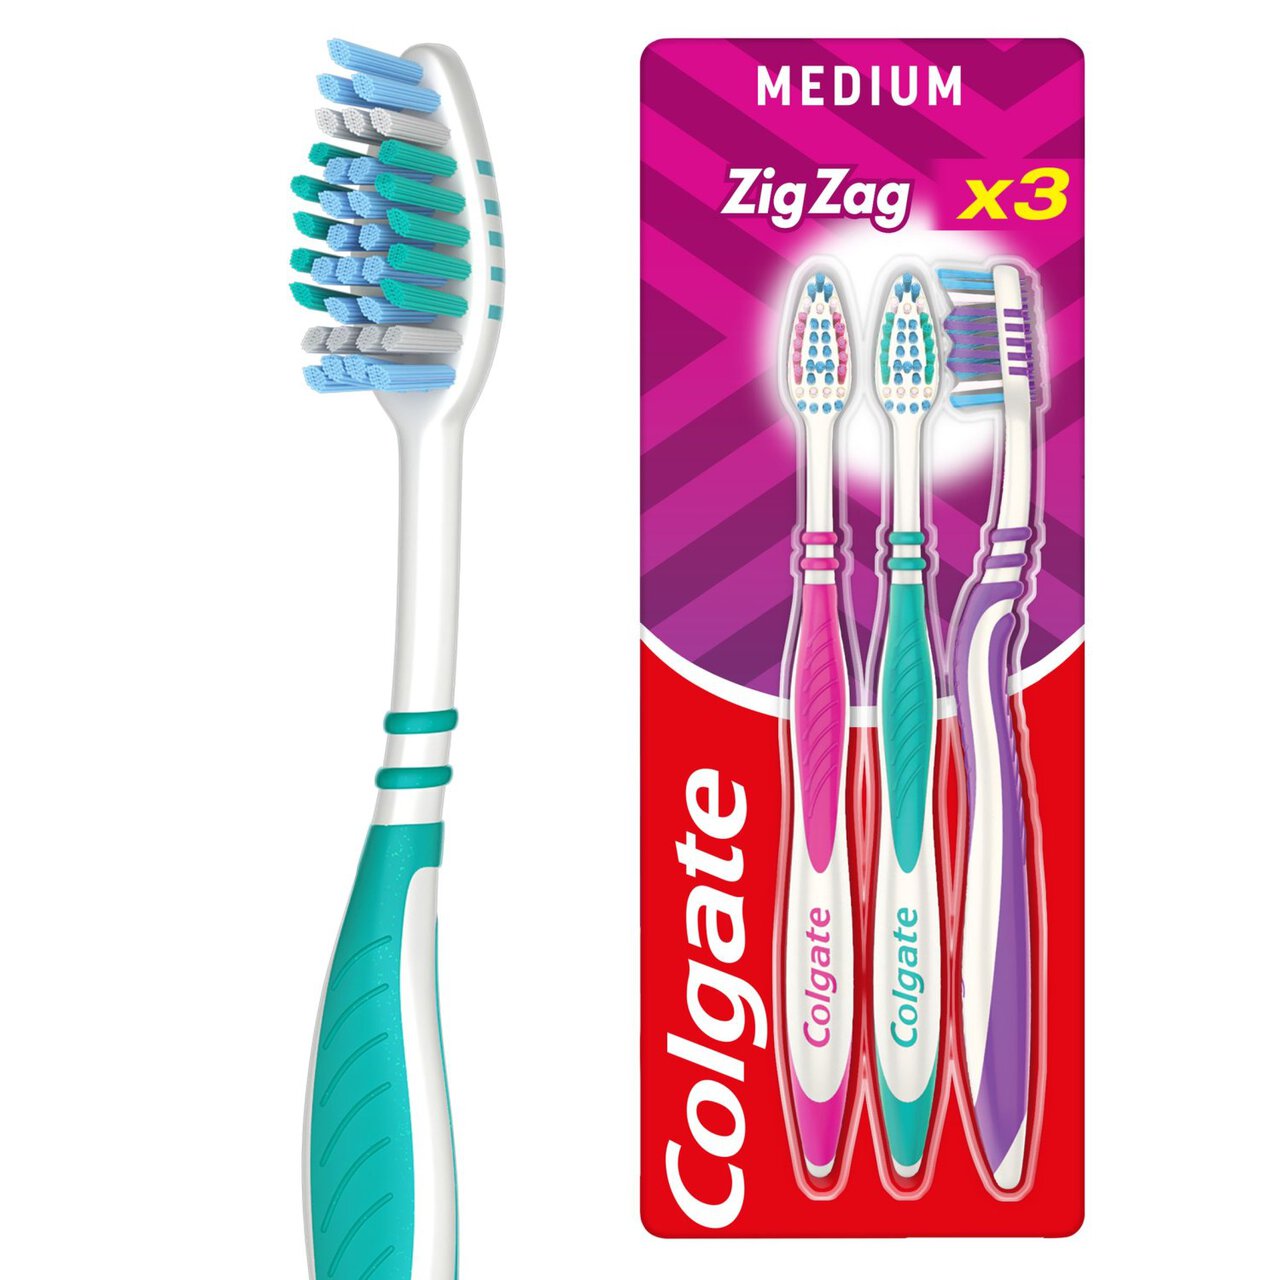 Colgate ZigZag Medium Toothbrush x3 3 per pack